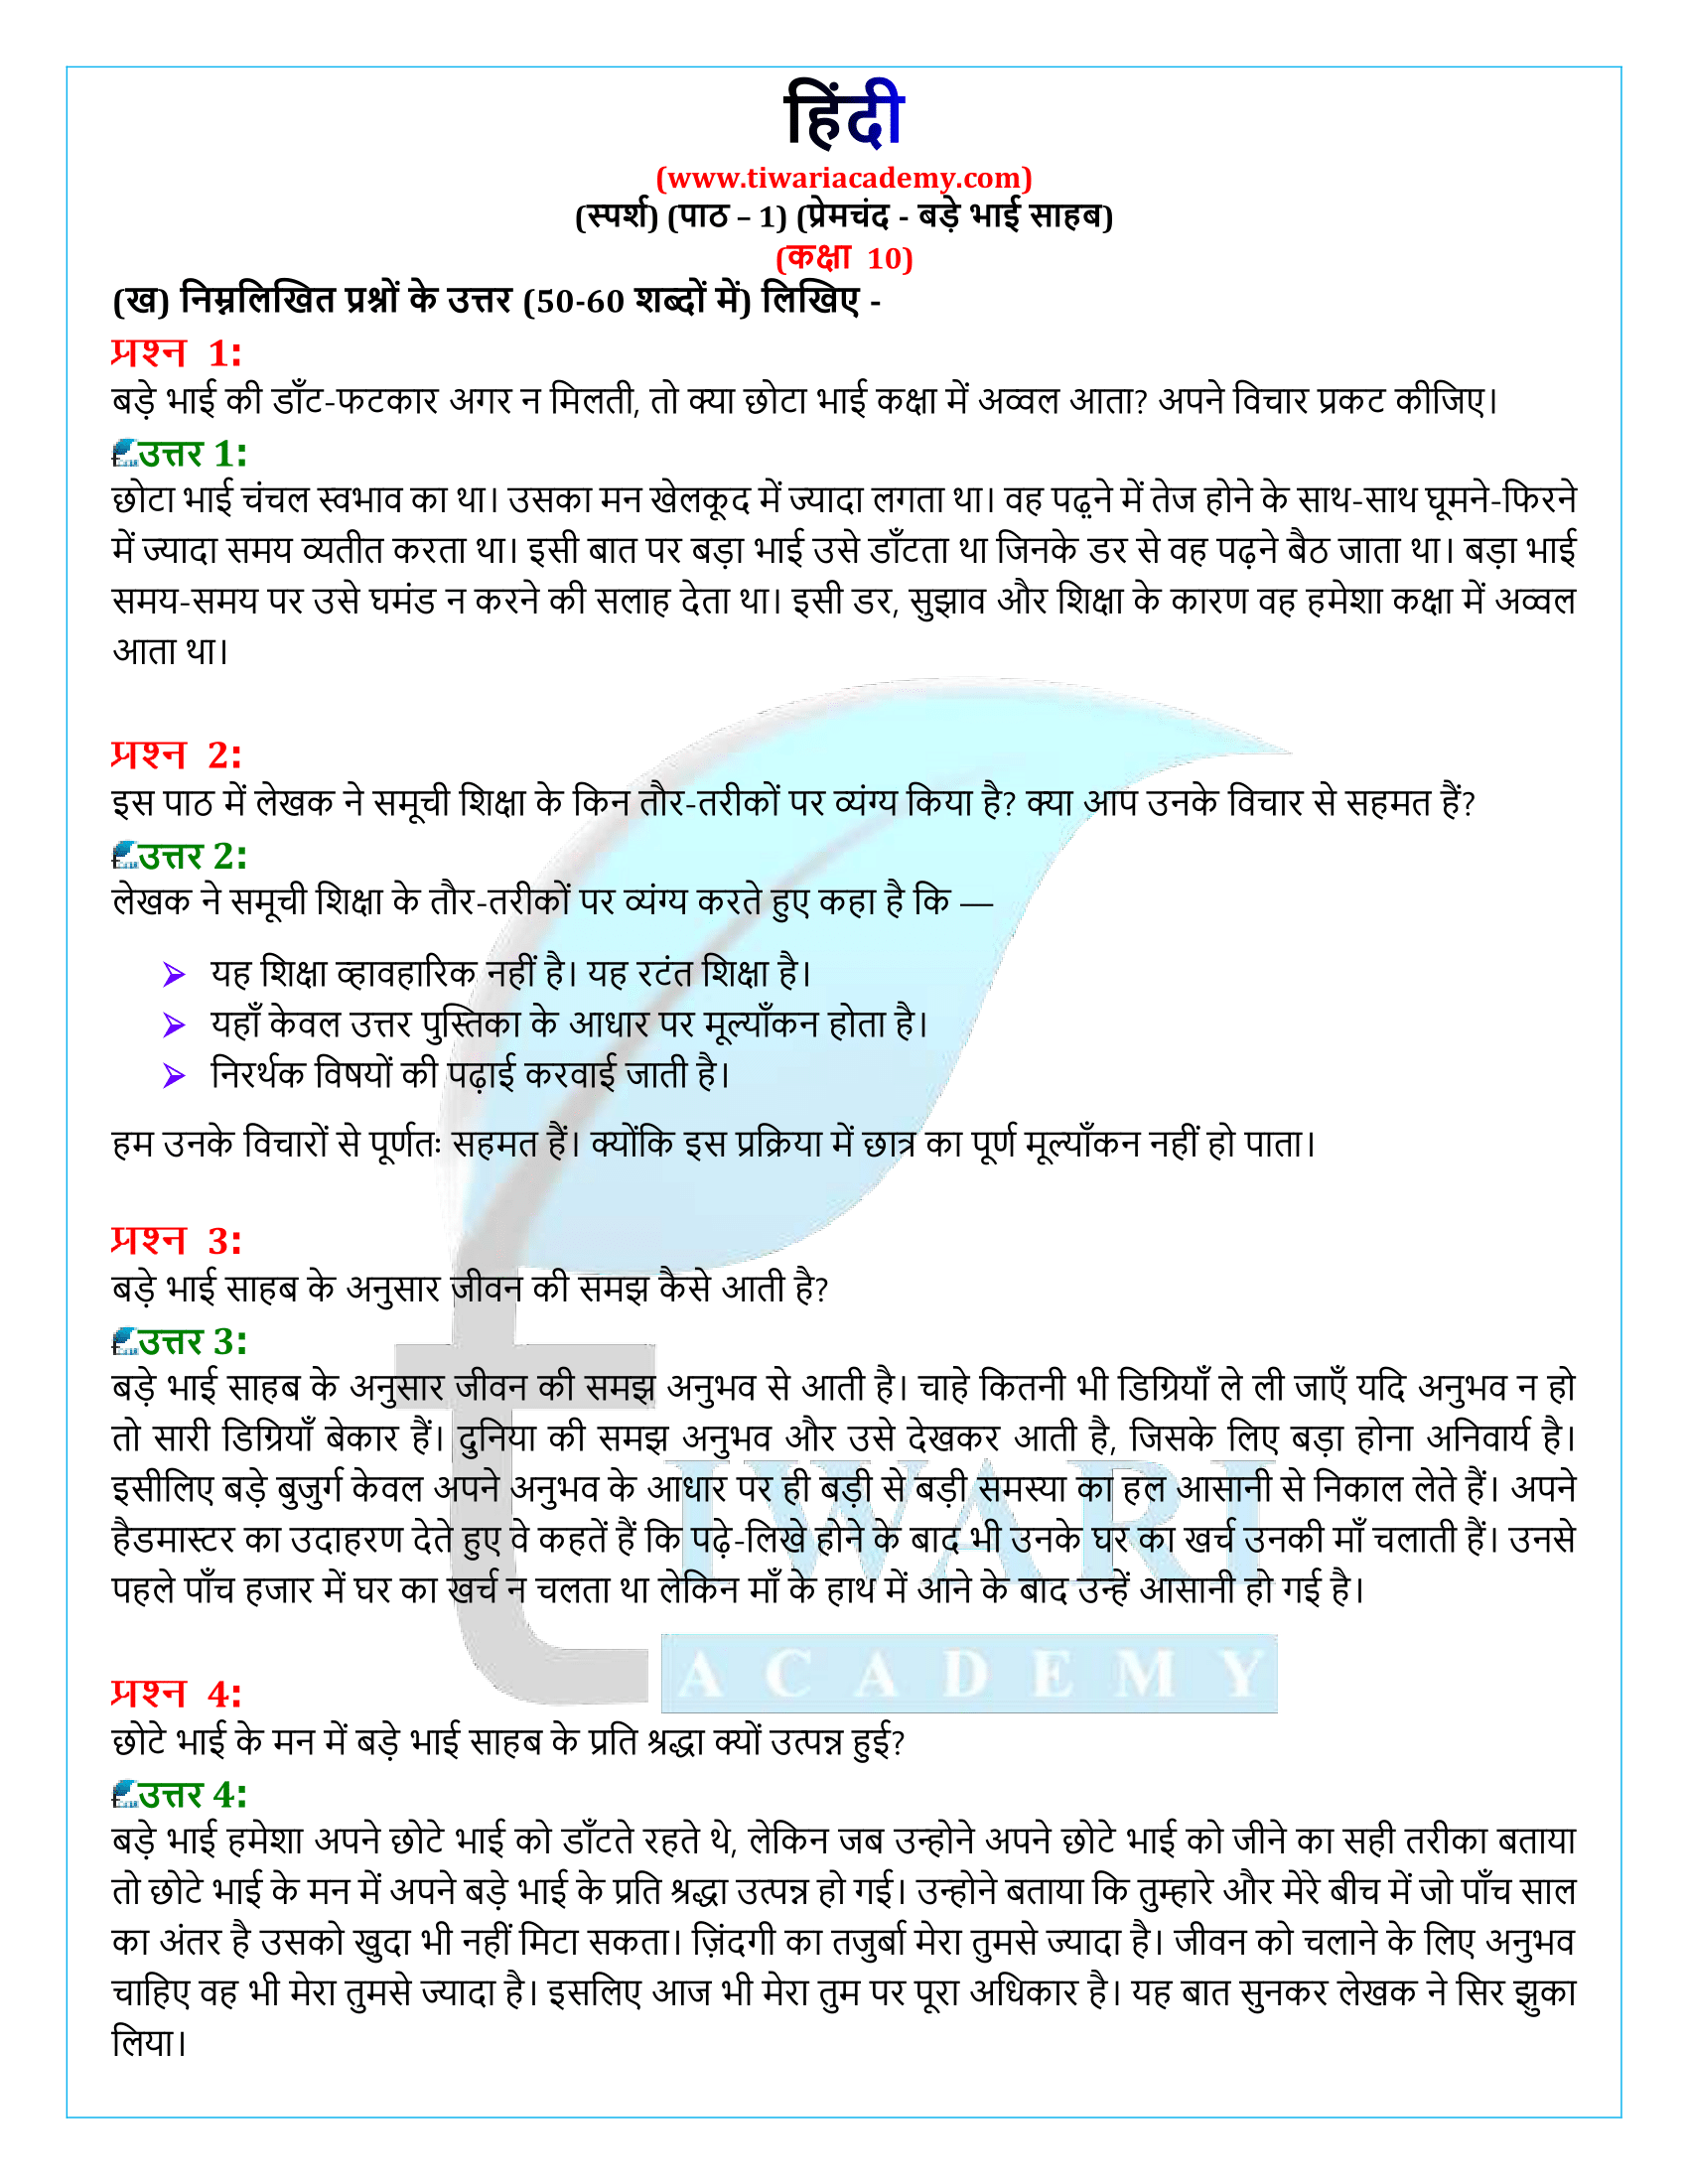 कक्षा 10 हिंदी स्पर्श गद्य अध्याय 1 के प्रश्न उत्तर